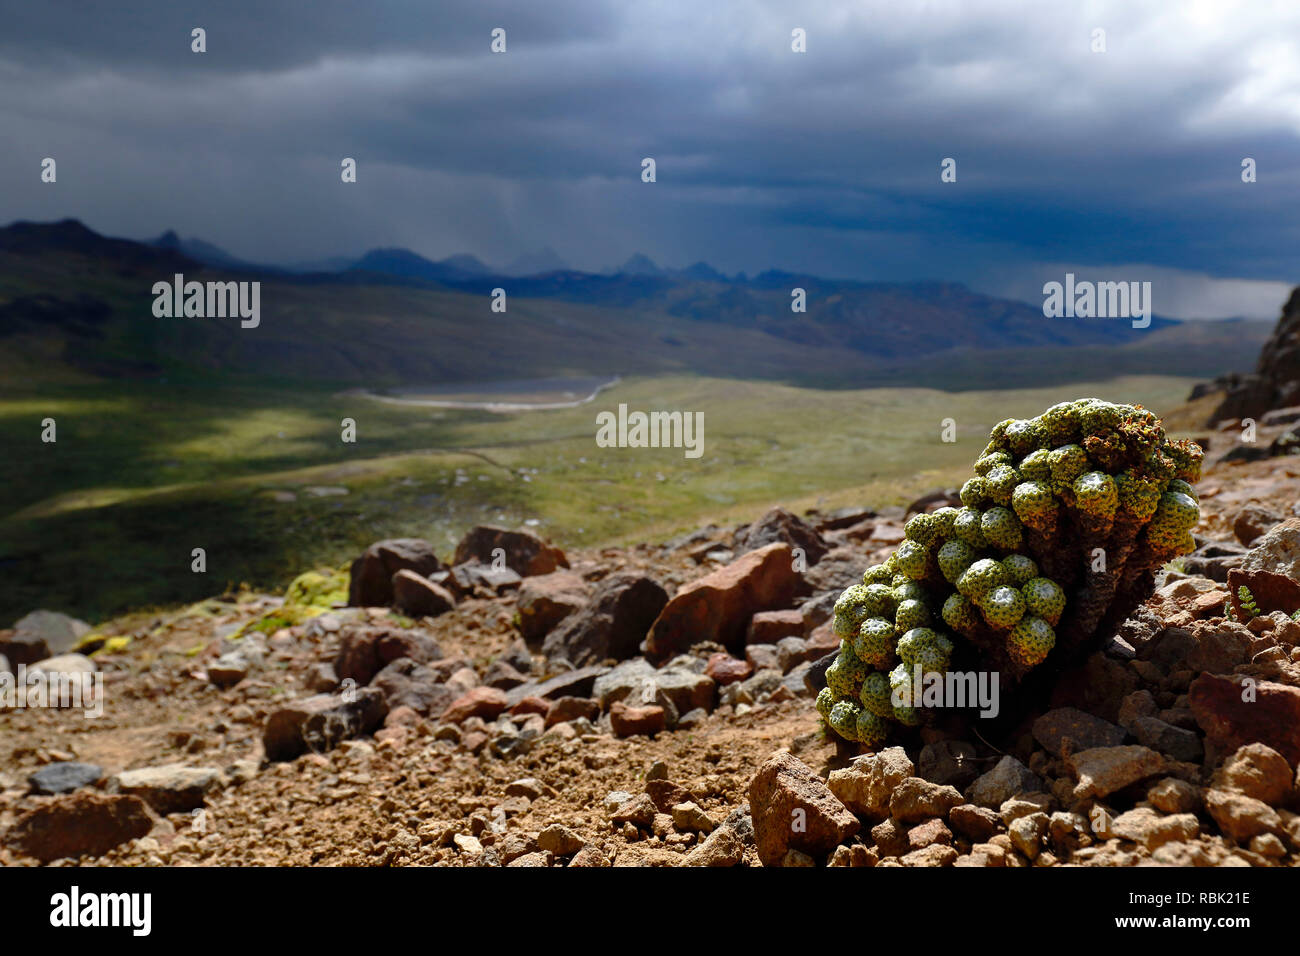 Impianto andina (mniodes sp.) che si trova nel suo ambiente naturale nelle altezze di Huancavelica. Foto Stock